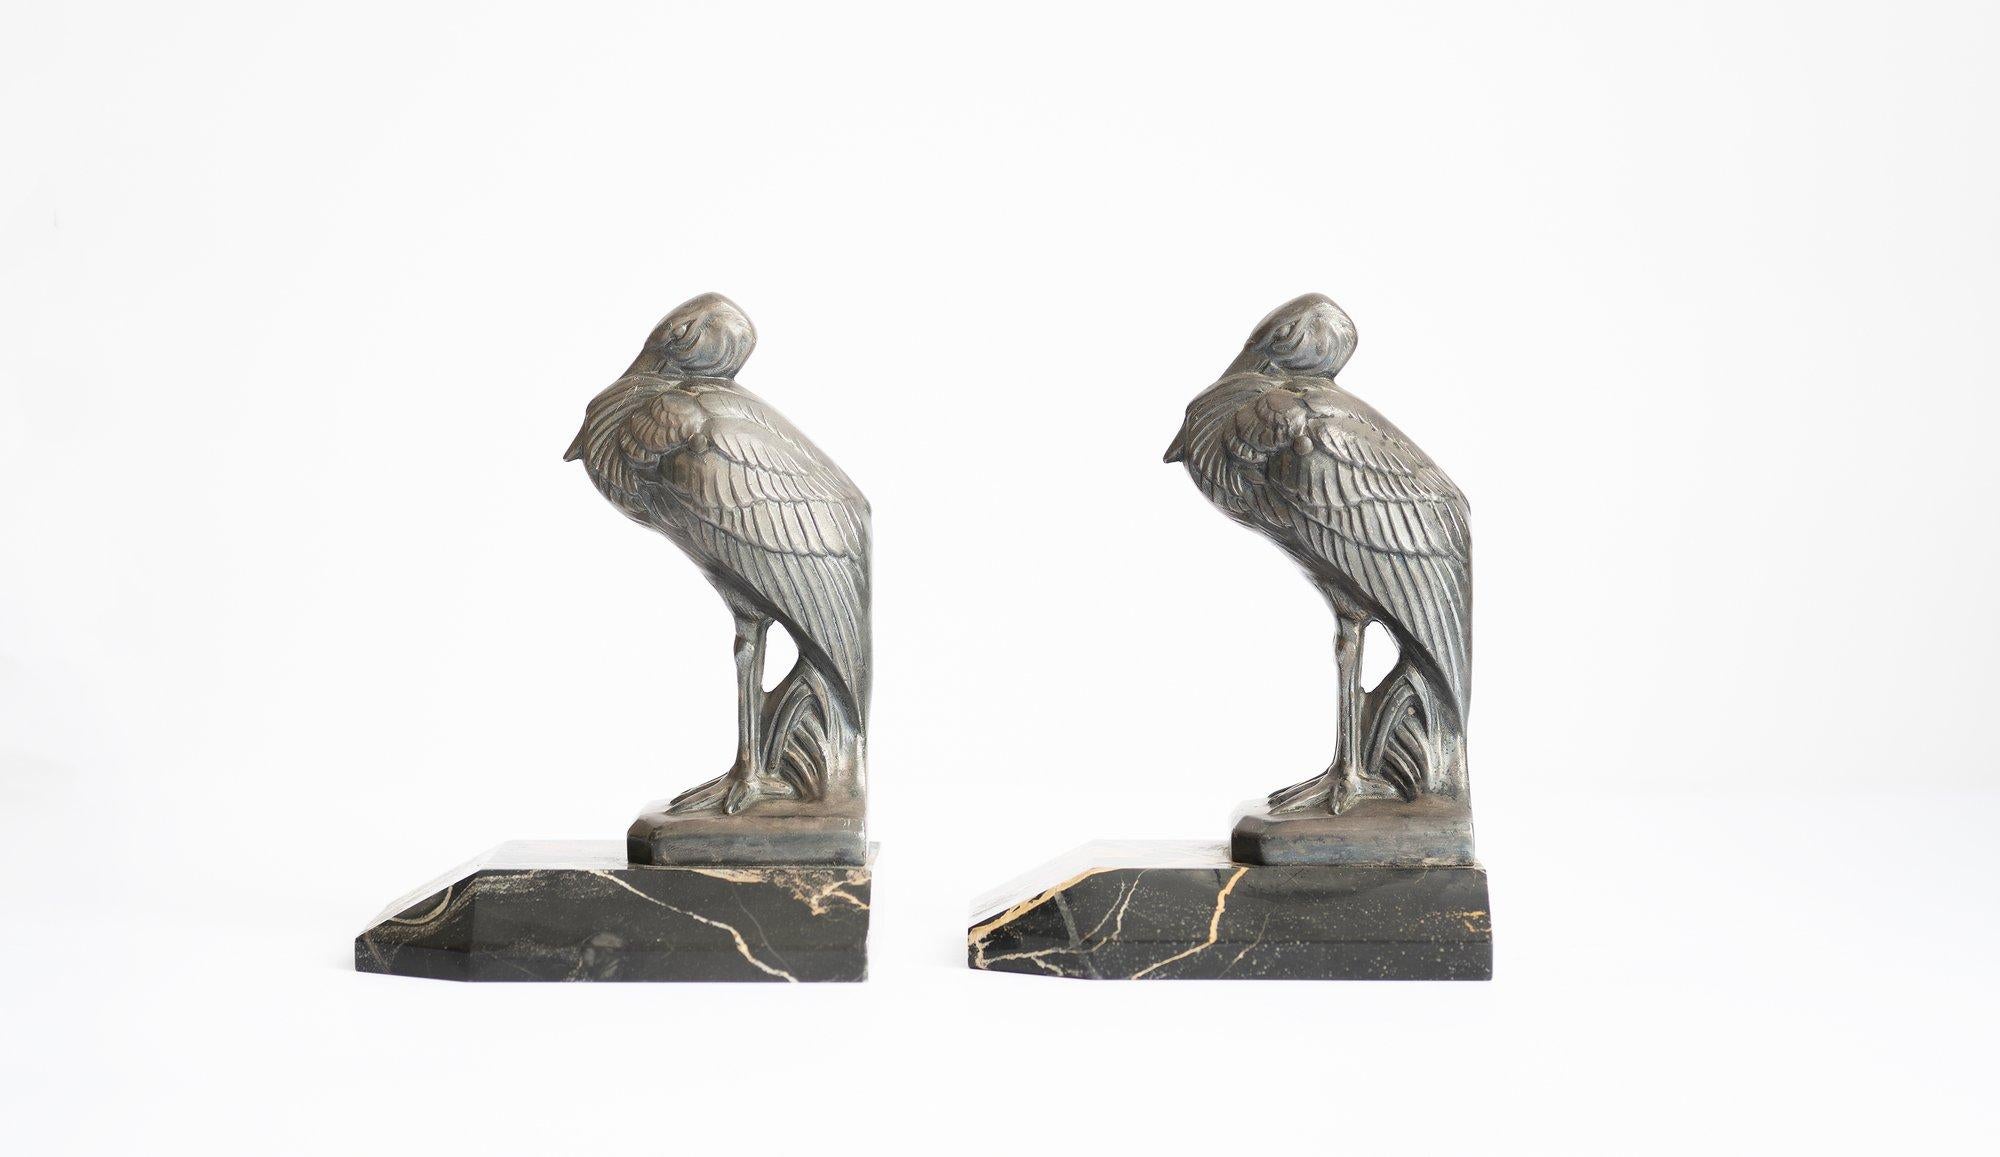 Antique Art Deco ''Heron'' Bookends by Maurice Frecourt 1930 France Art Nouveau For Sale 3